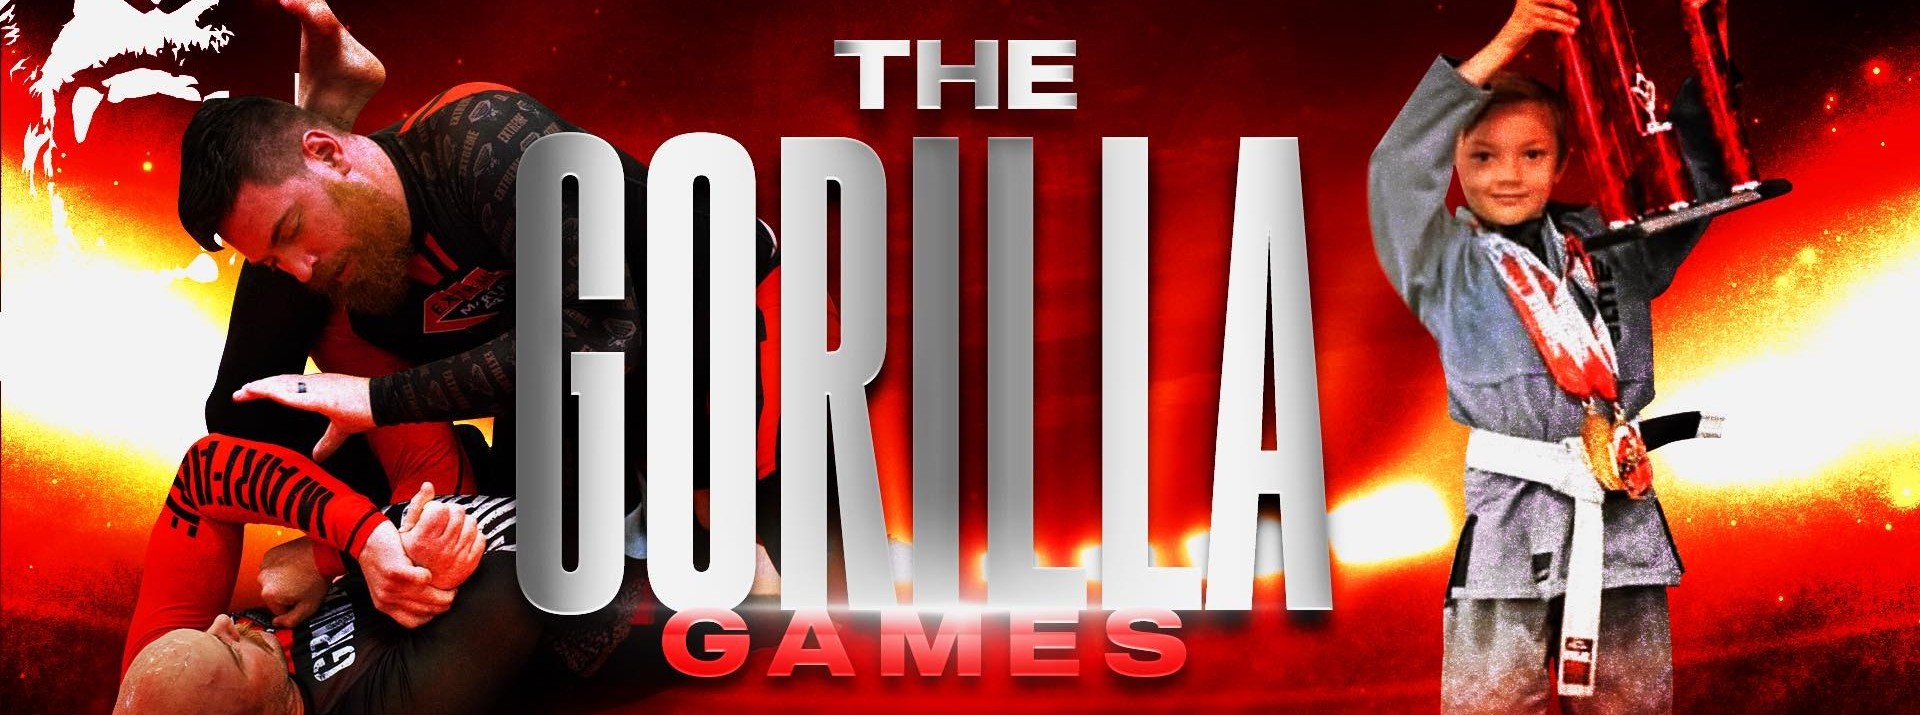 The Gorilla Games - Smoothcomp